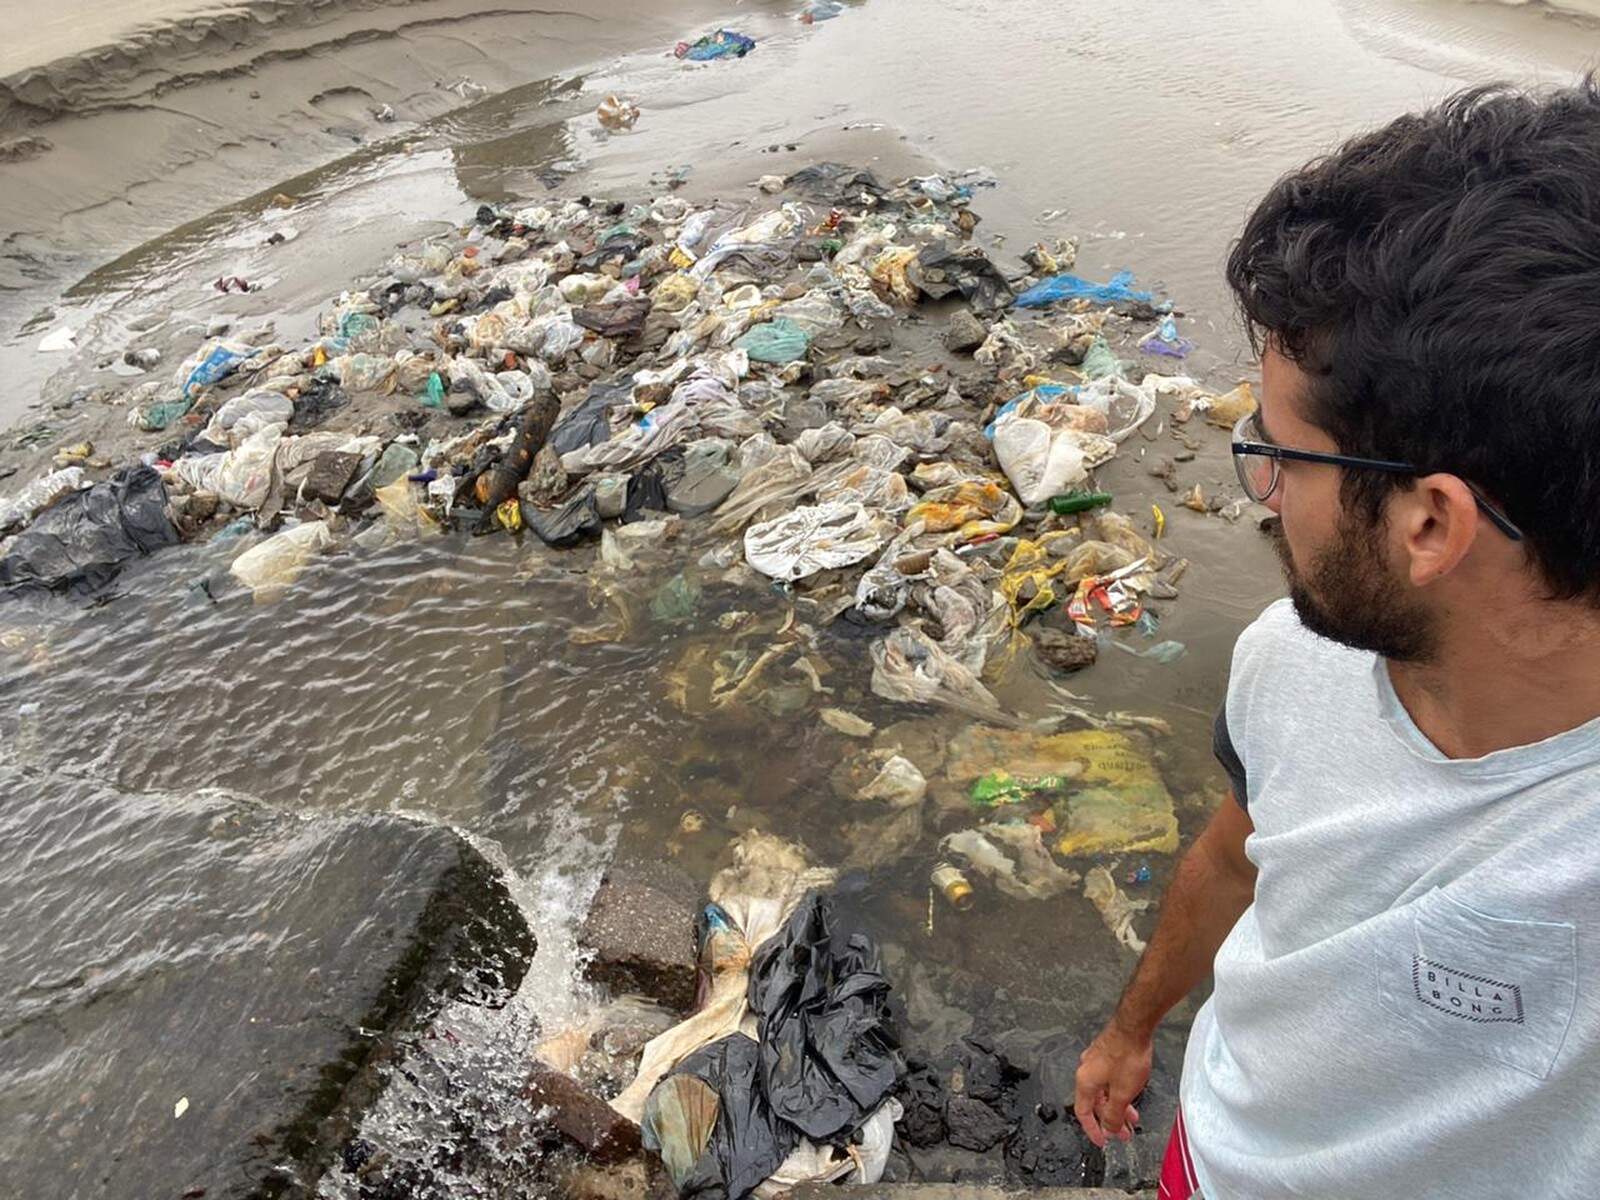 Prefeitura diz que quantidade de lixo na praia aumentou após fortes chuvas atingirem a região